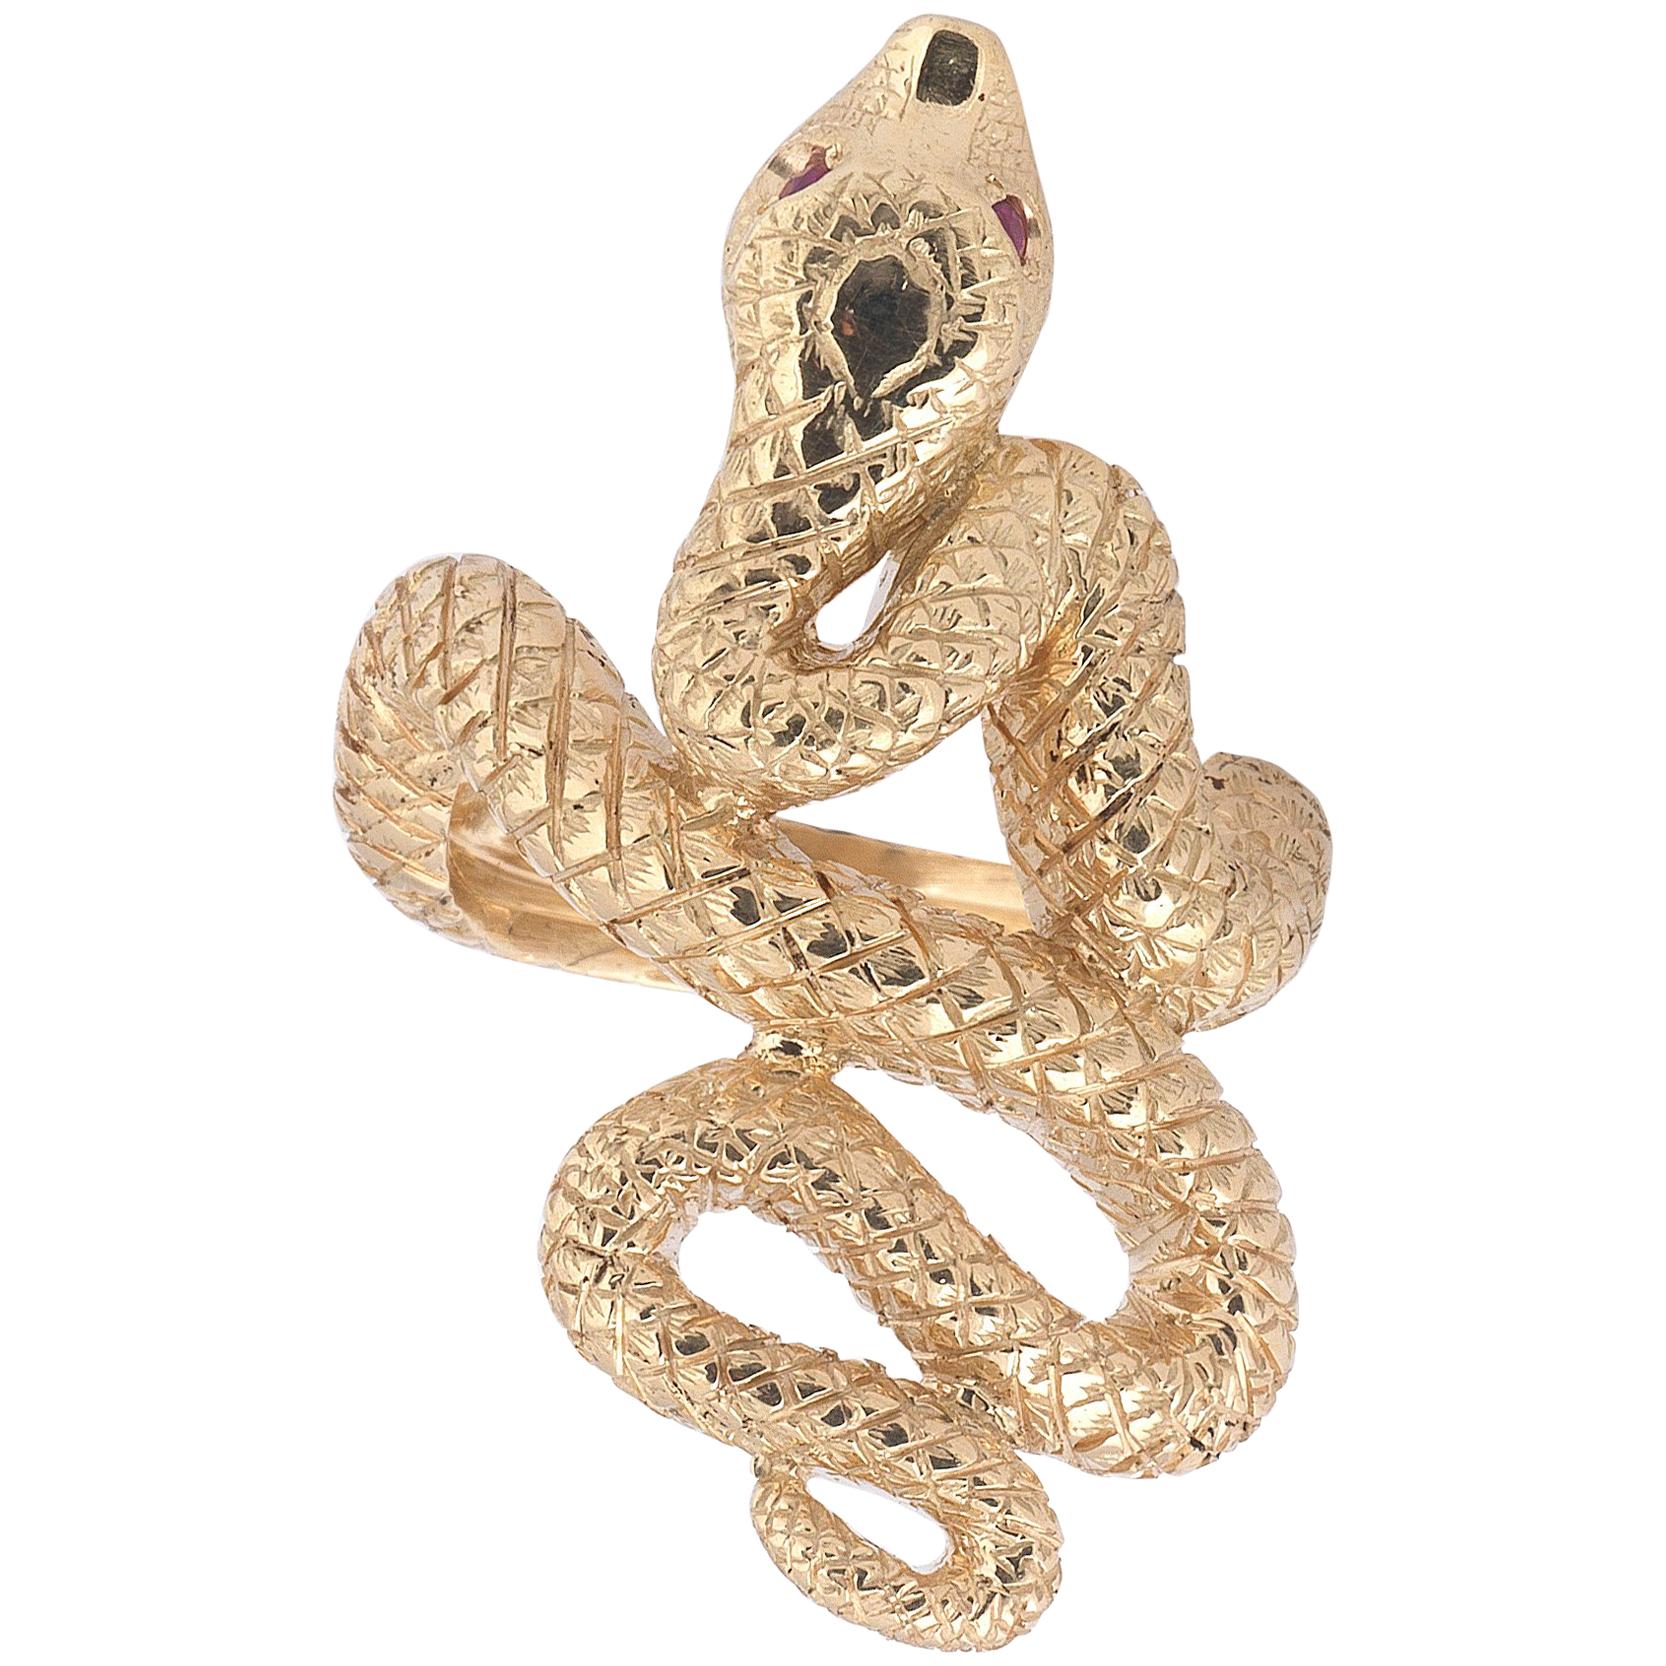 Rubies and 18 Karat Gold Snake Ring